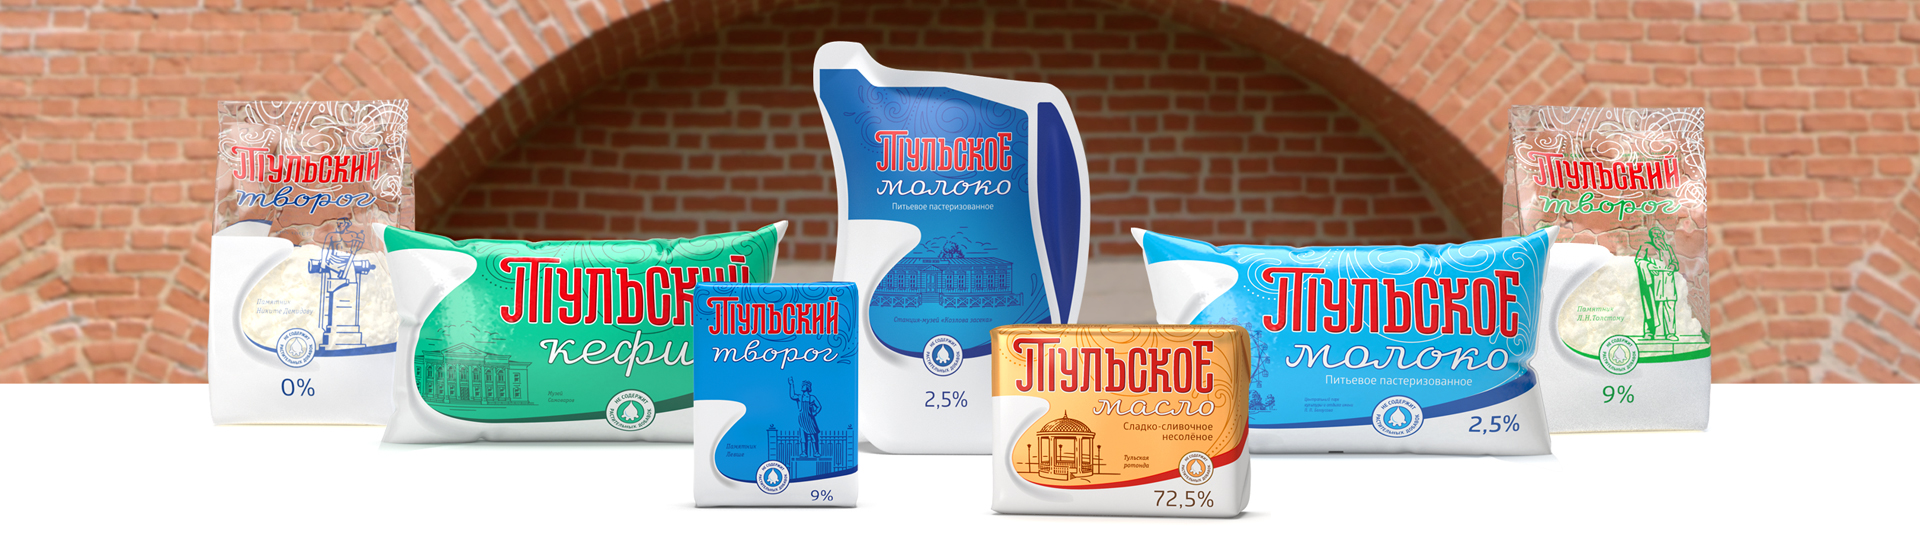 внешний вид молочных изделий торговой марки «Тульское»